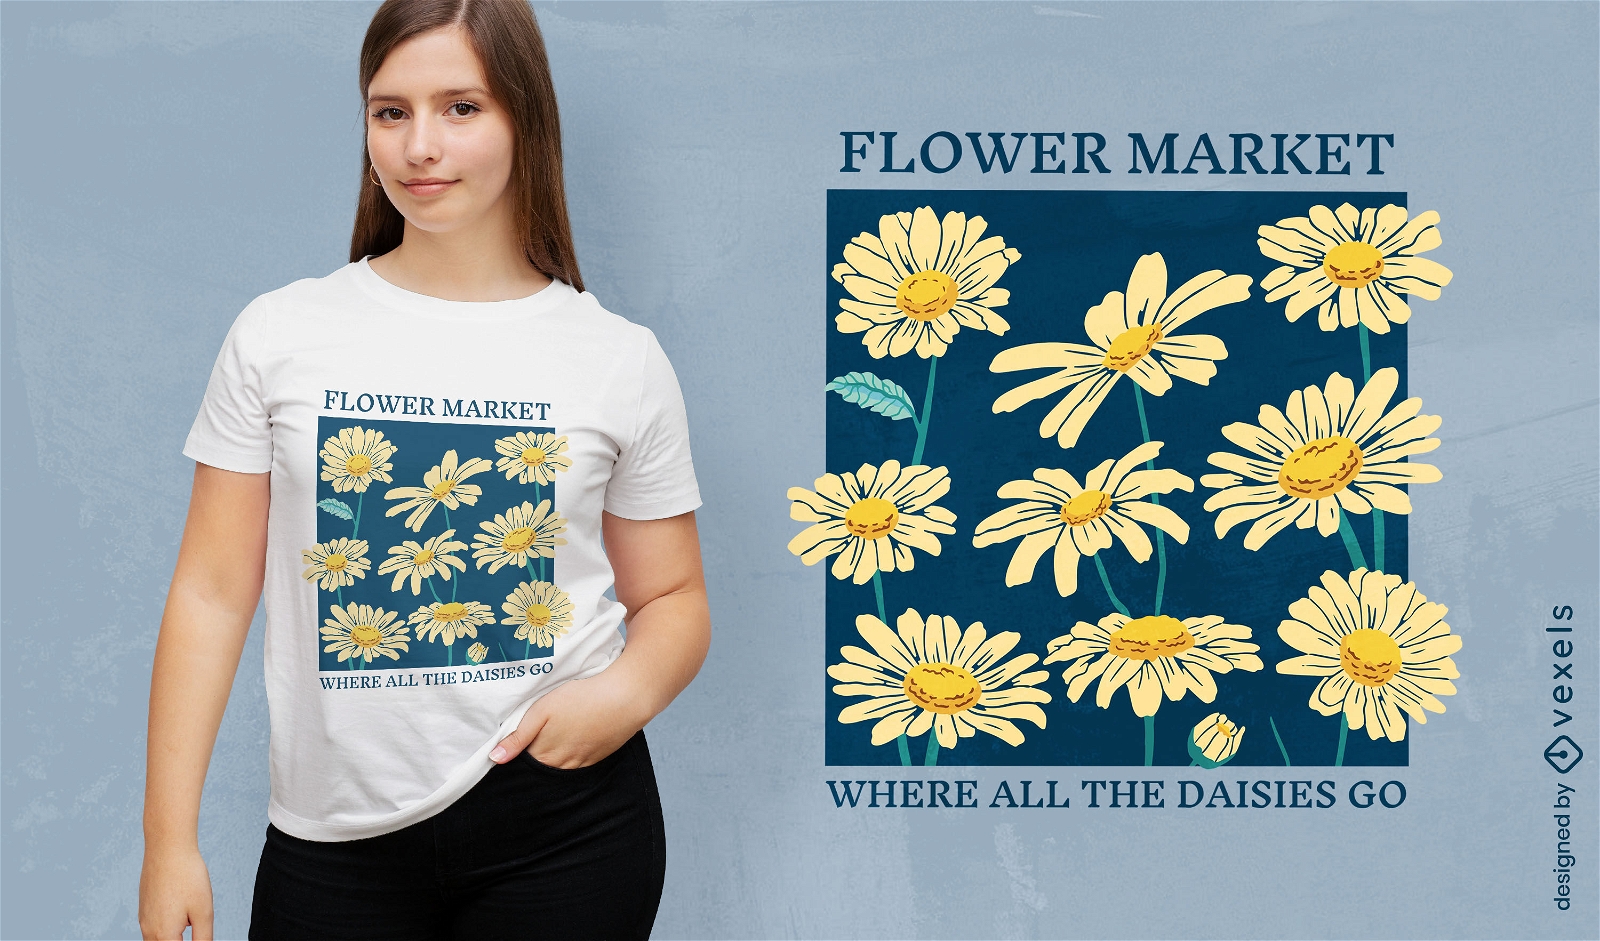 Diseño de camiseta de margaritas del mercado de flores.